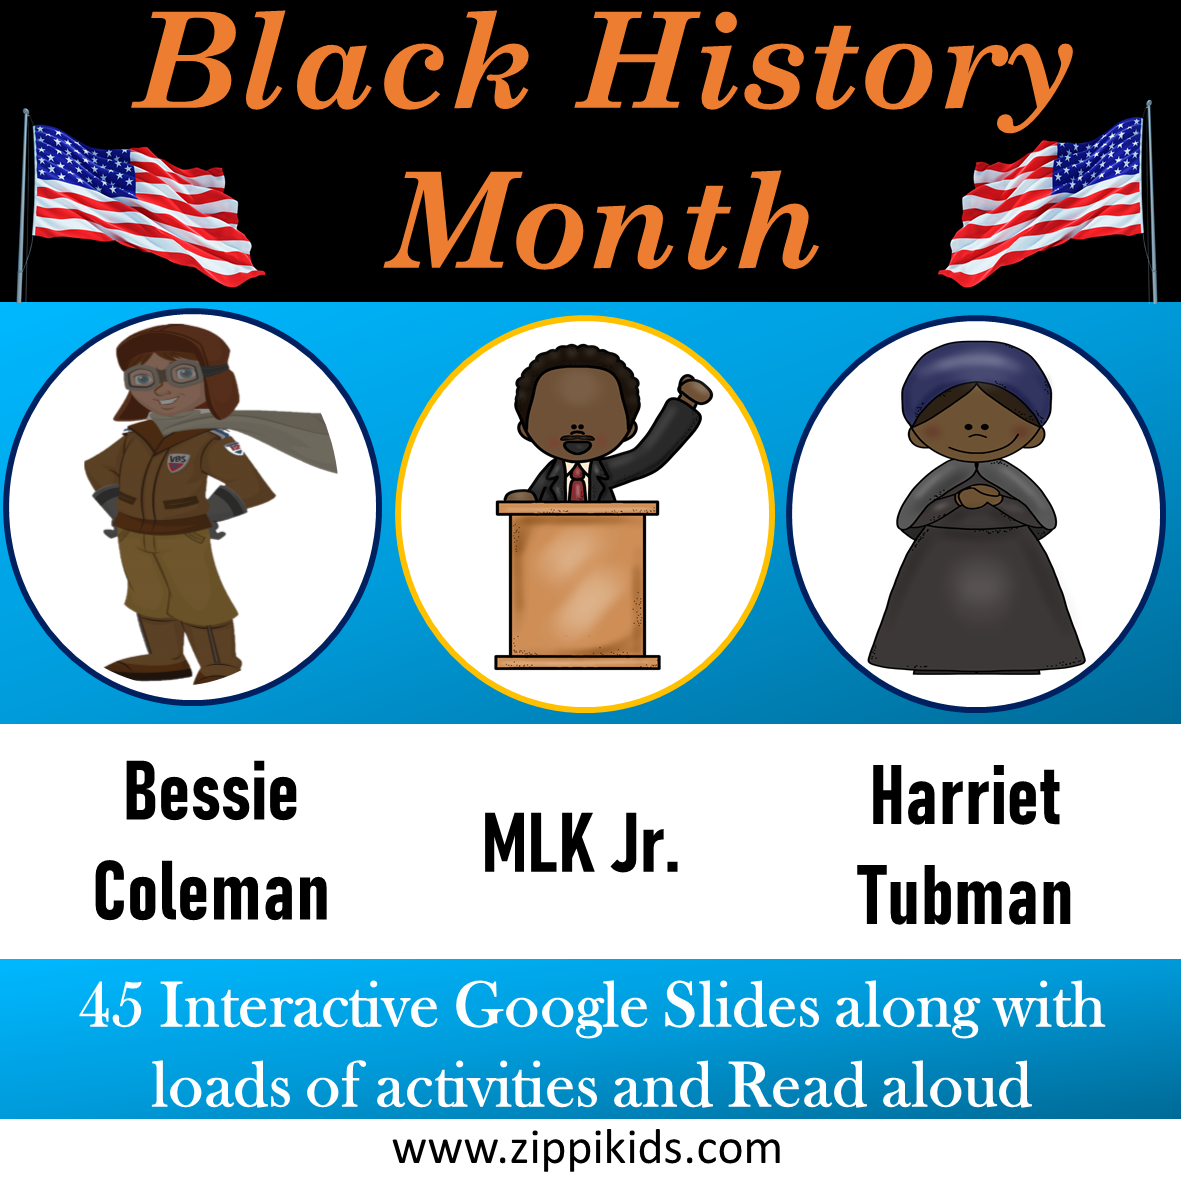 Bessie Coleman, Martin Luther King Jr, Harriet Tubman - 50 Google Slides